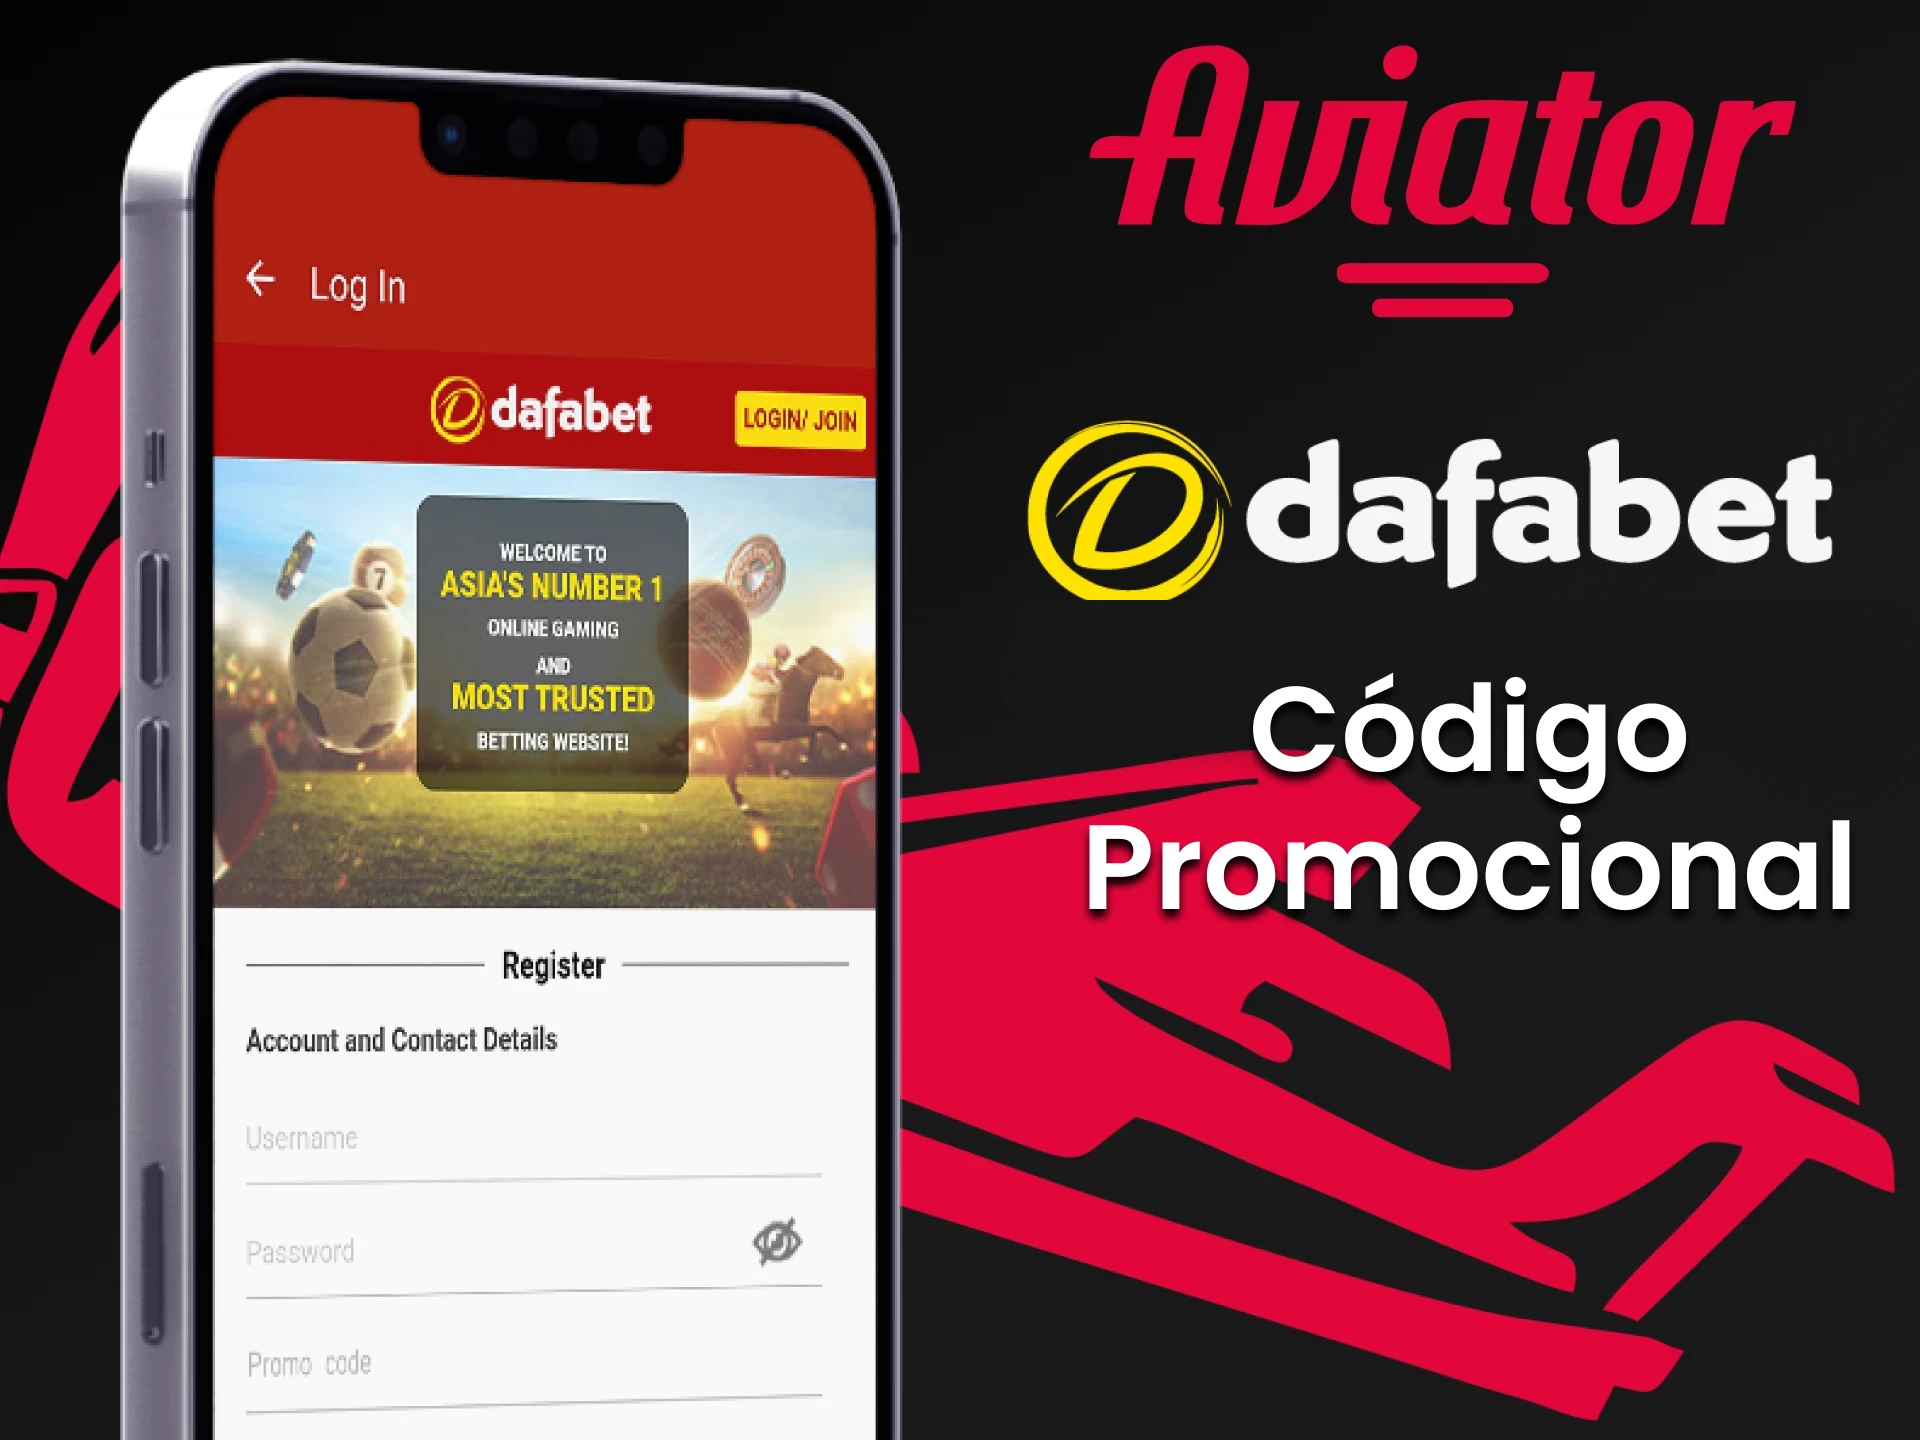 Encontre um código promocional da Dafabet para ganhar um bônus no jogo Aviator.